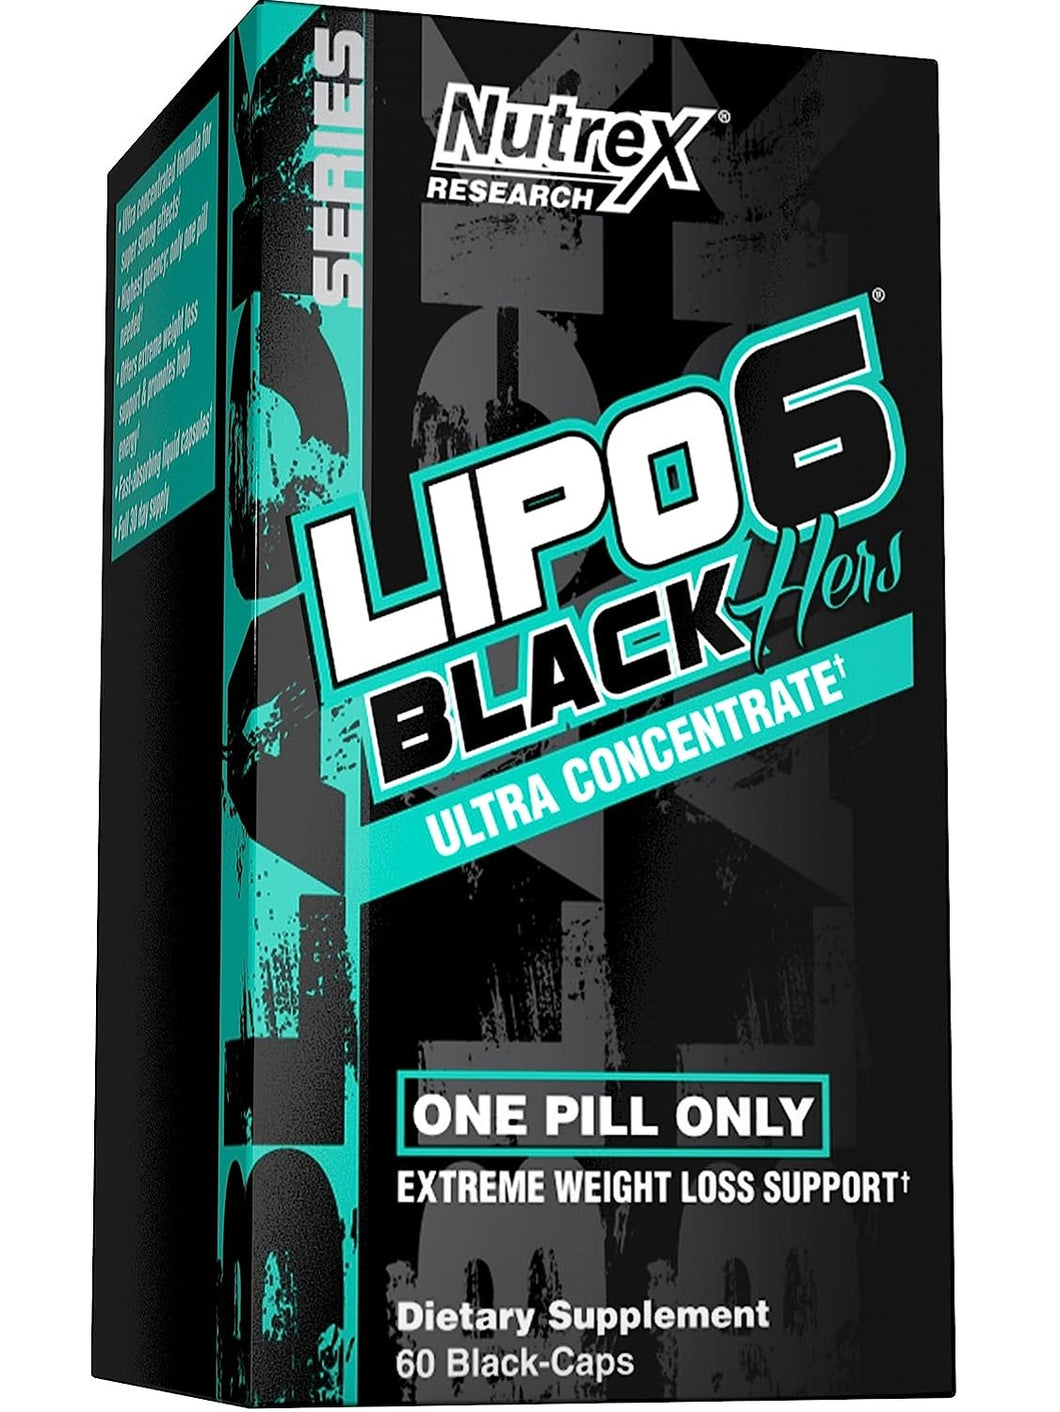 Lipo 6 Black para mujer: quemador de grasa ultra concentrado diseñado especialmente para ellas. Nutrex. 60 cápsulas.